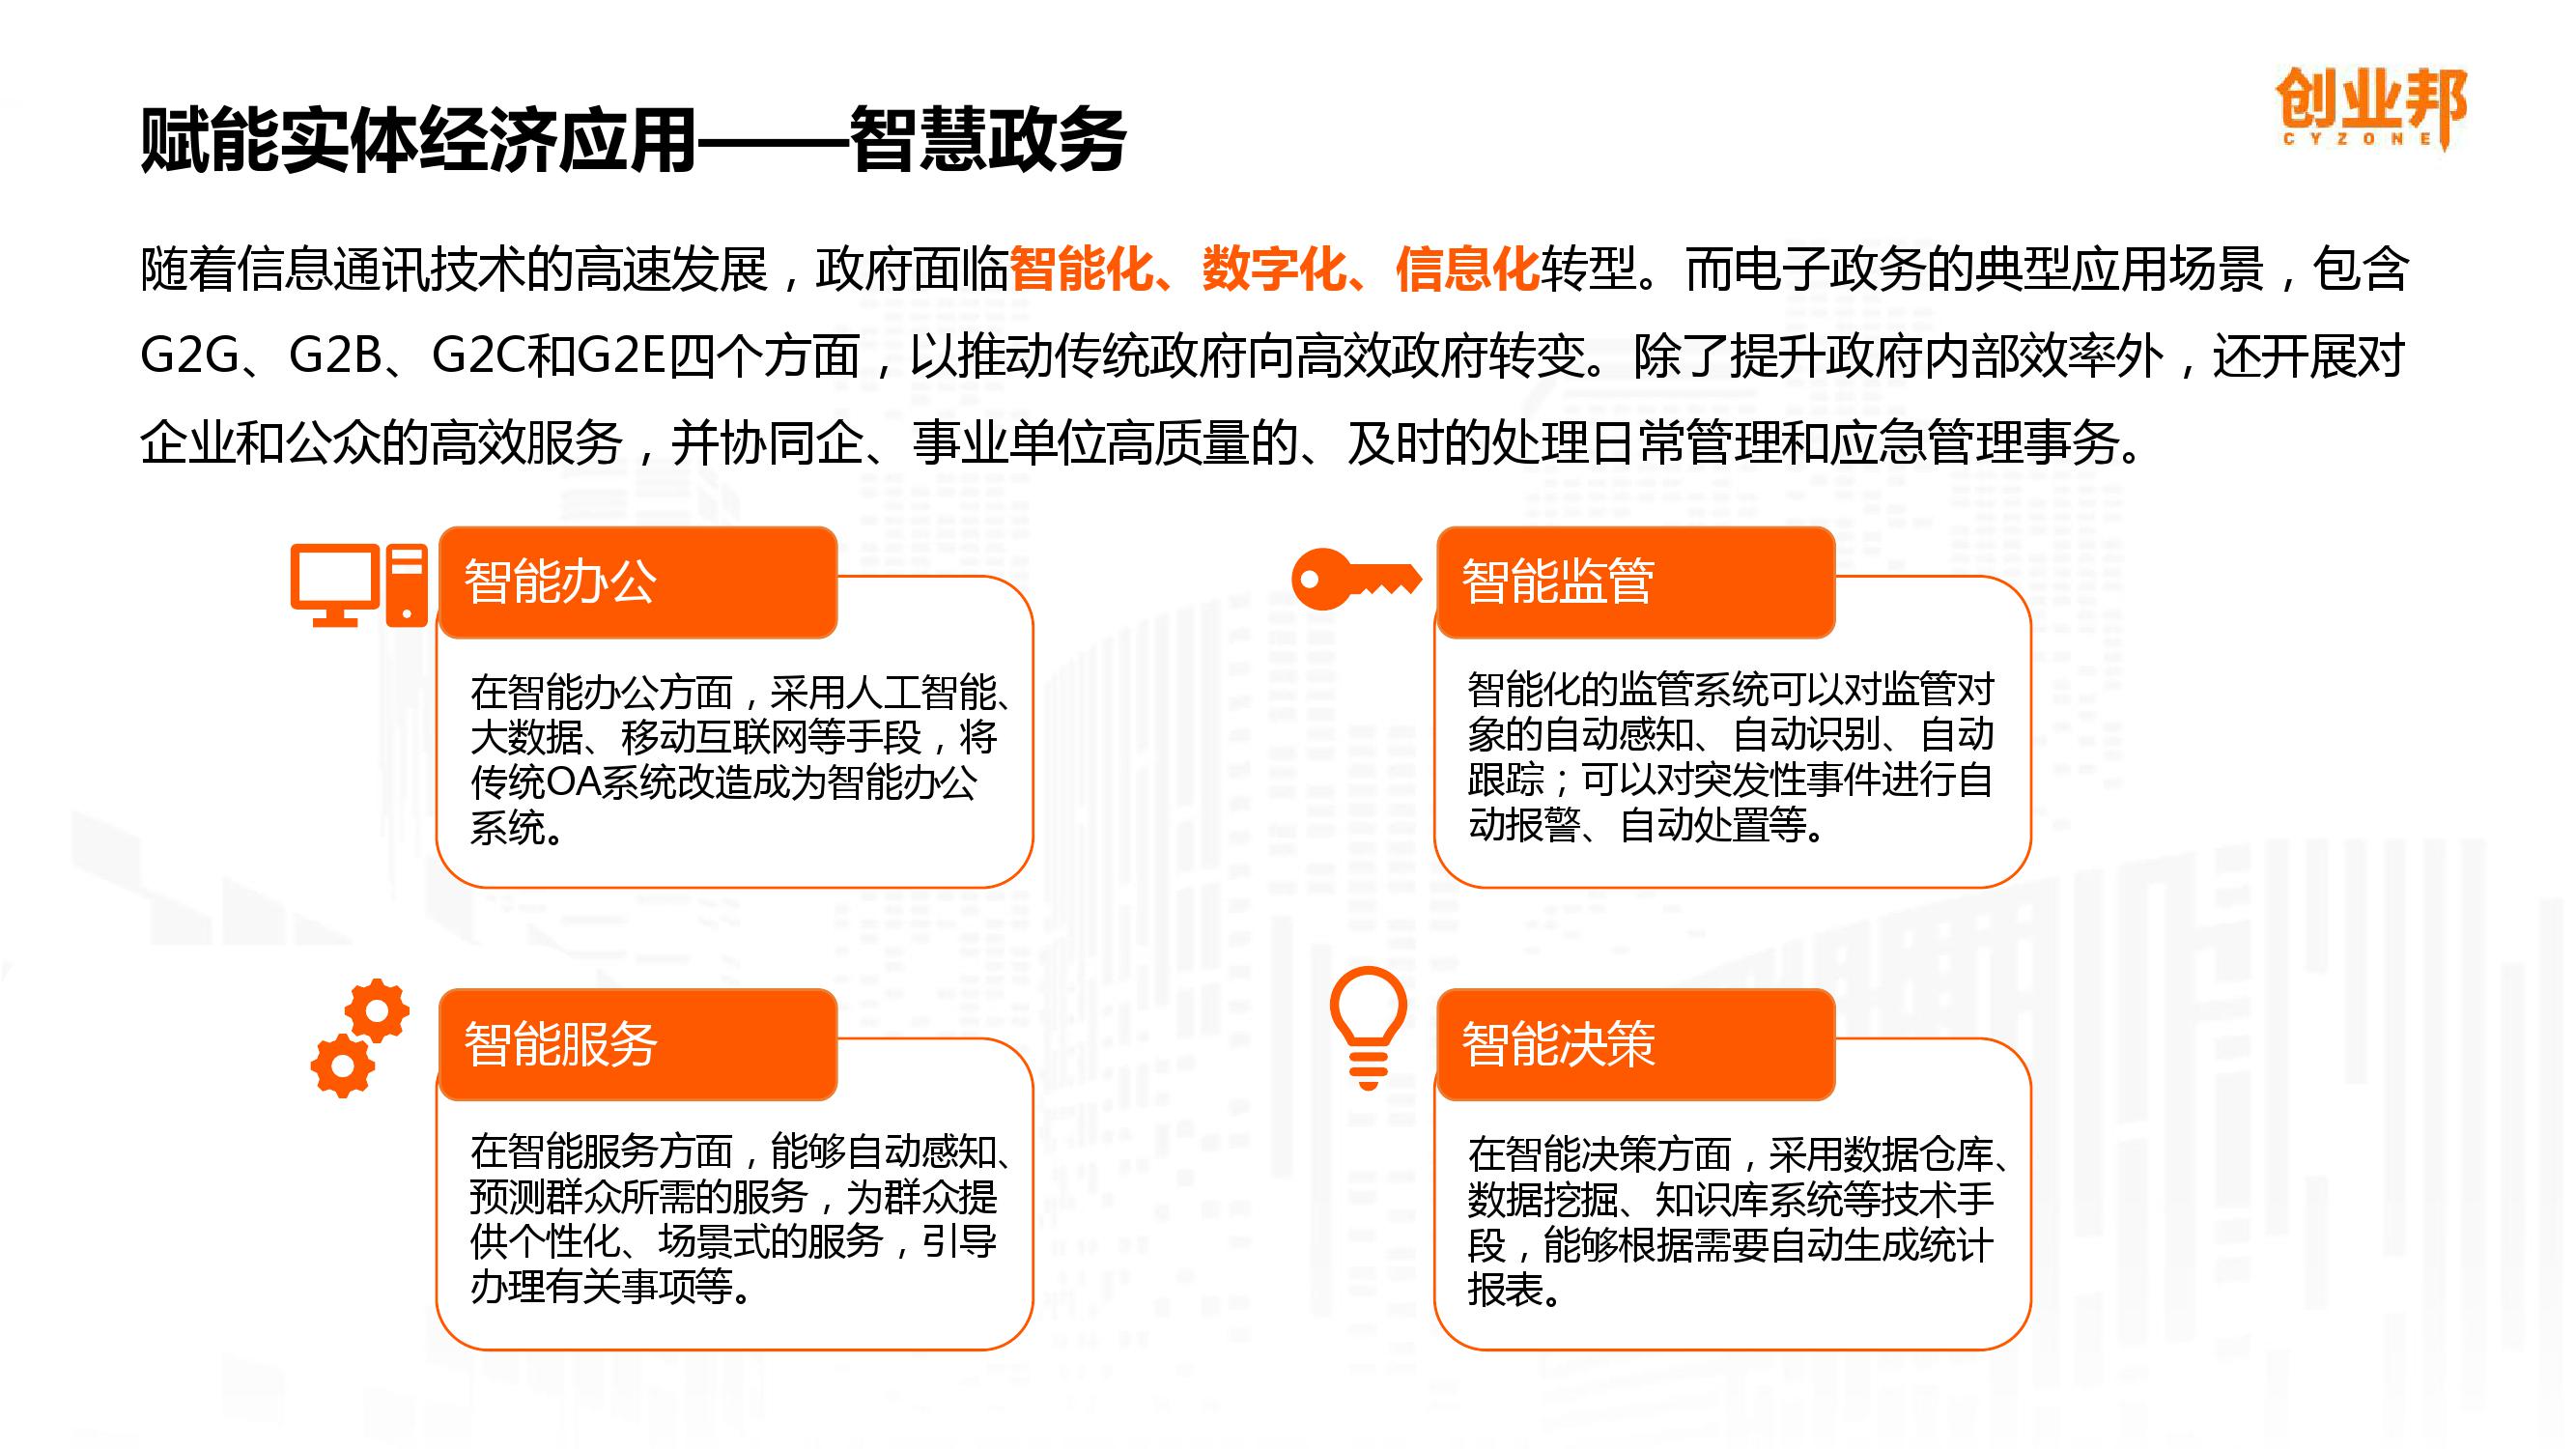 2019中国企业数字化智能化研究报告_000026-3